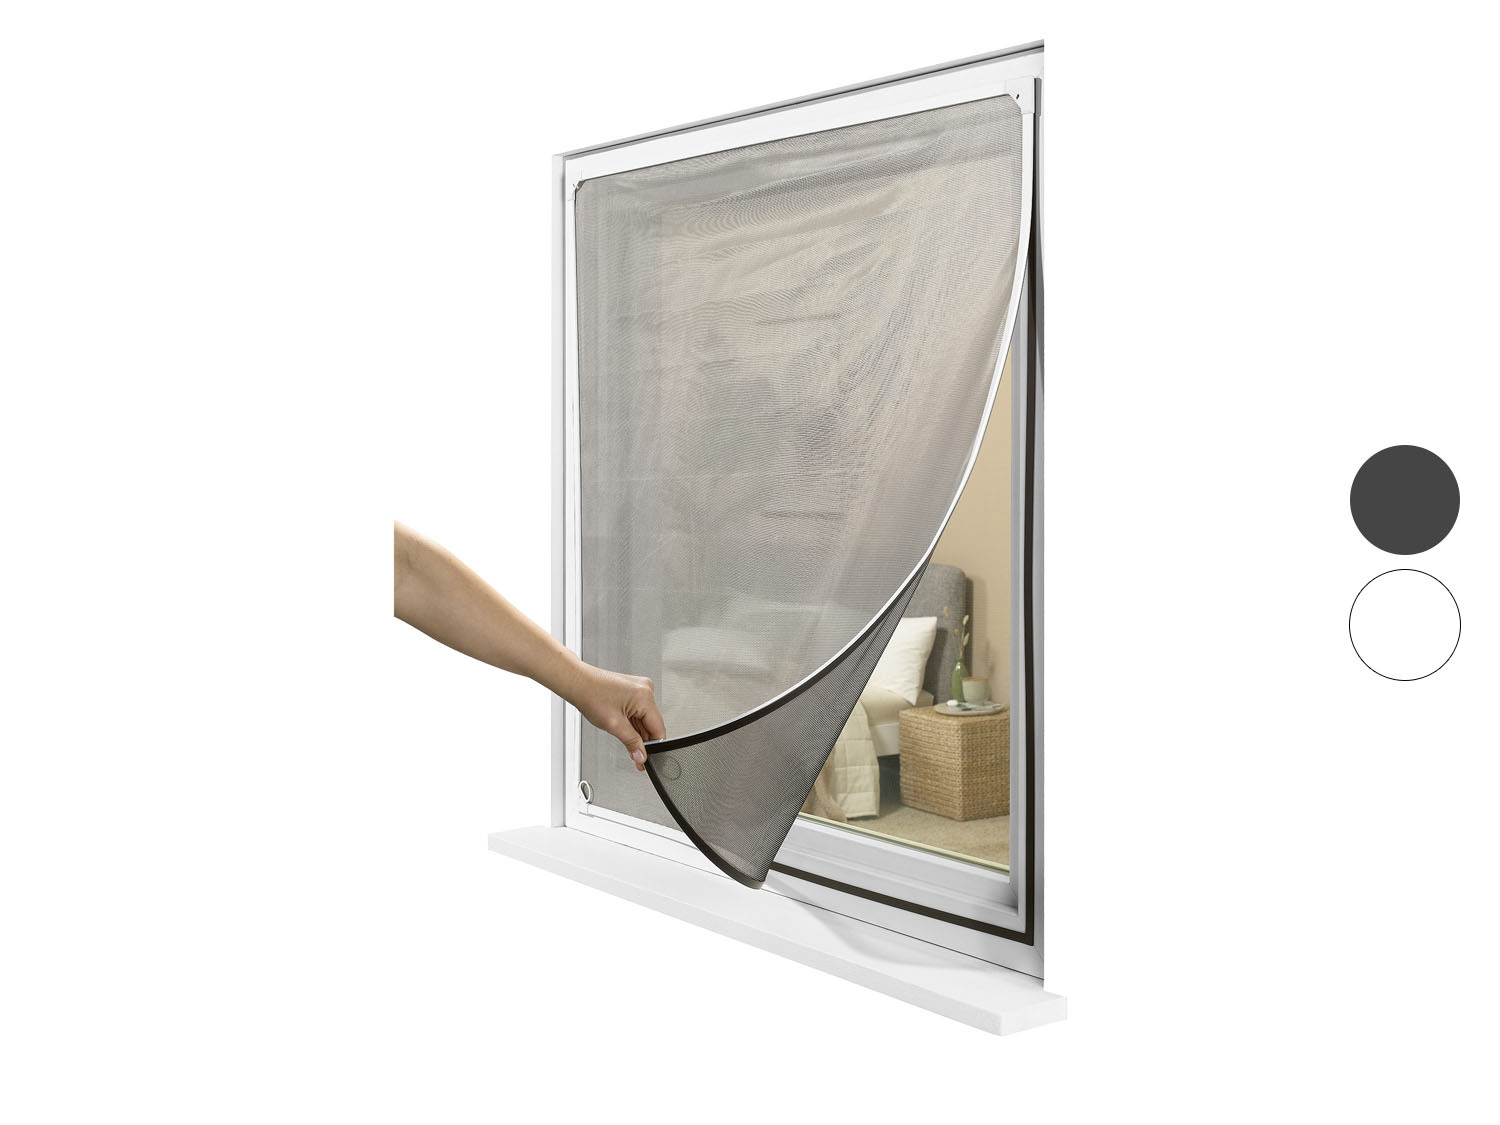 LIVARNO home Insektenschutzfenster, magnetisch, 110 x …